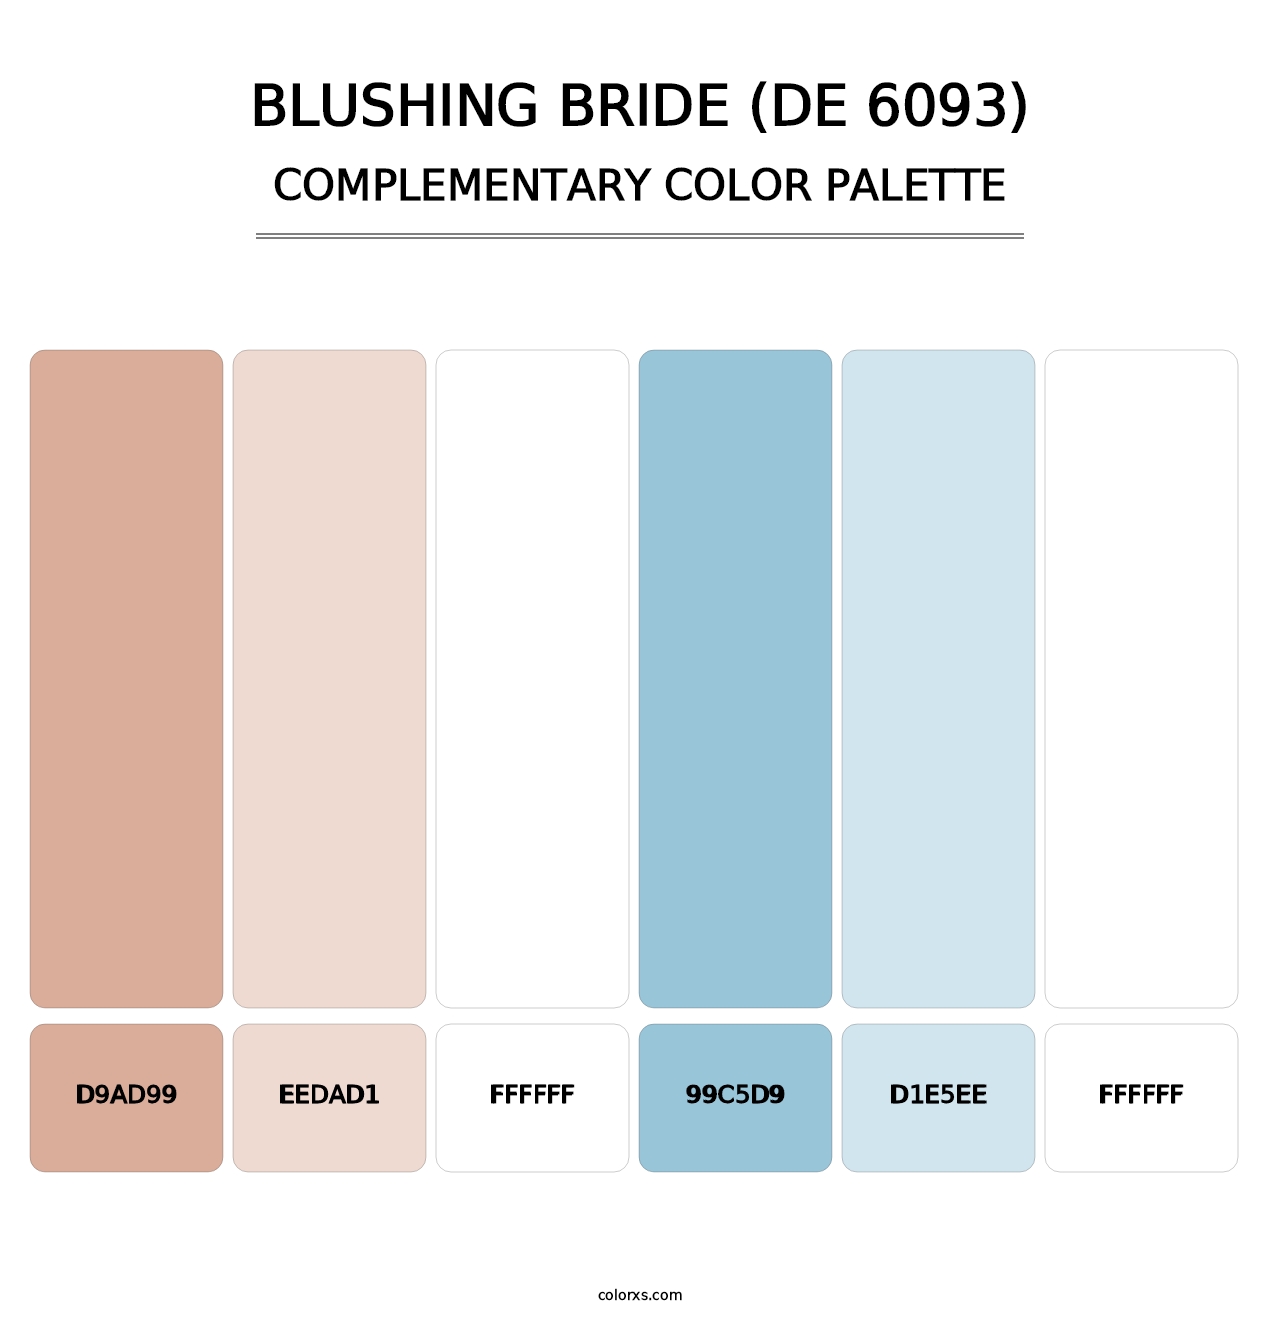 Blushing Bride (DE 6093) - Complementary Color Palette